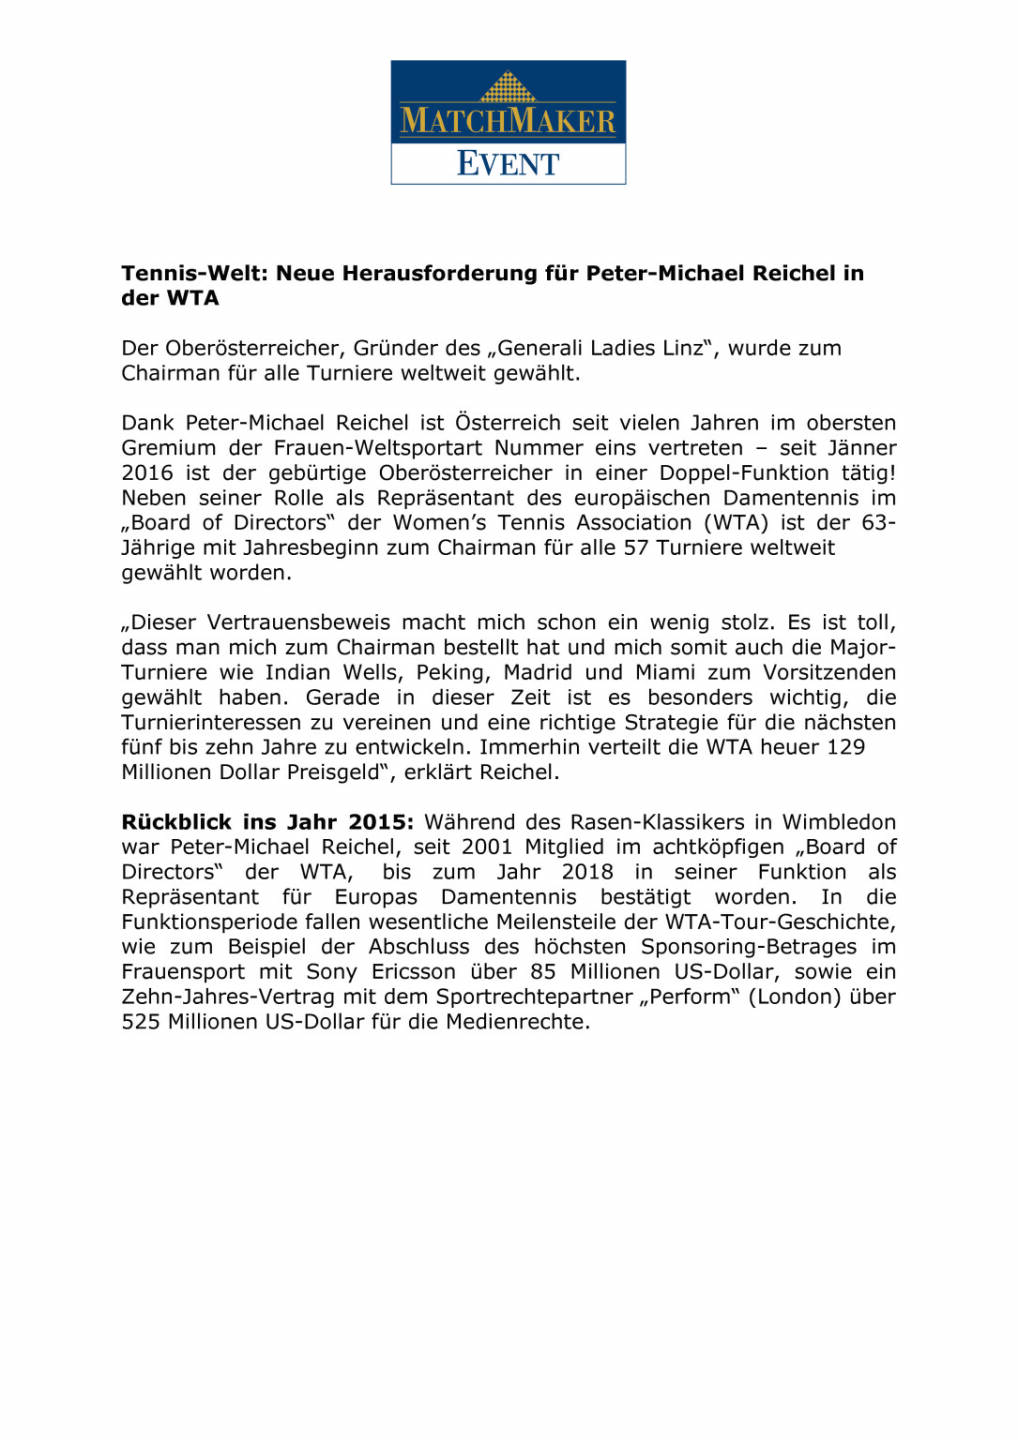 WTA - Neue Herausforderung für Peter-Michael Reichel , Seite 1/2, komplettes Dokument unter http://boerse-social.com/static/uploads/file_593_wta_-_neue_herausforderung_fur_peter-michael_reichel.pdf